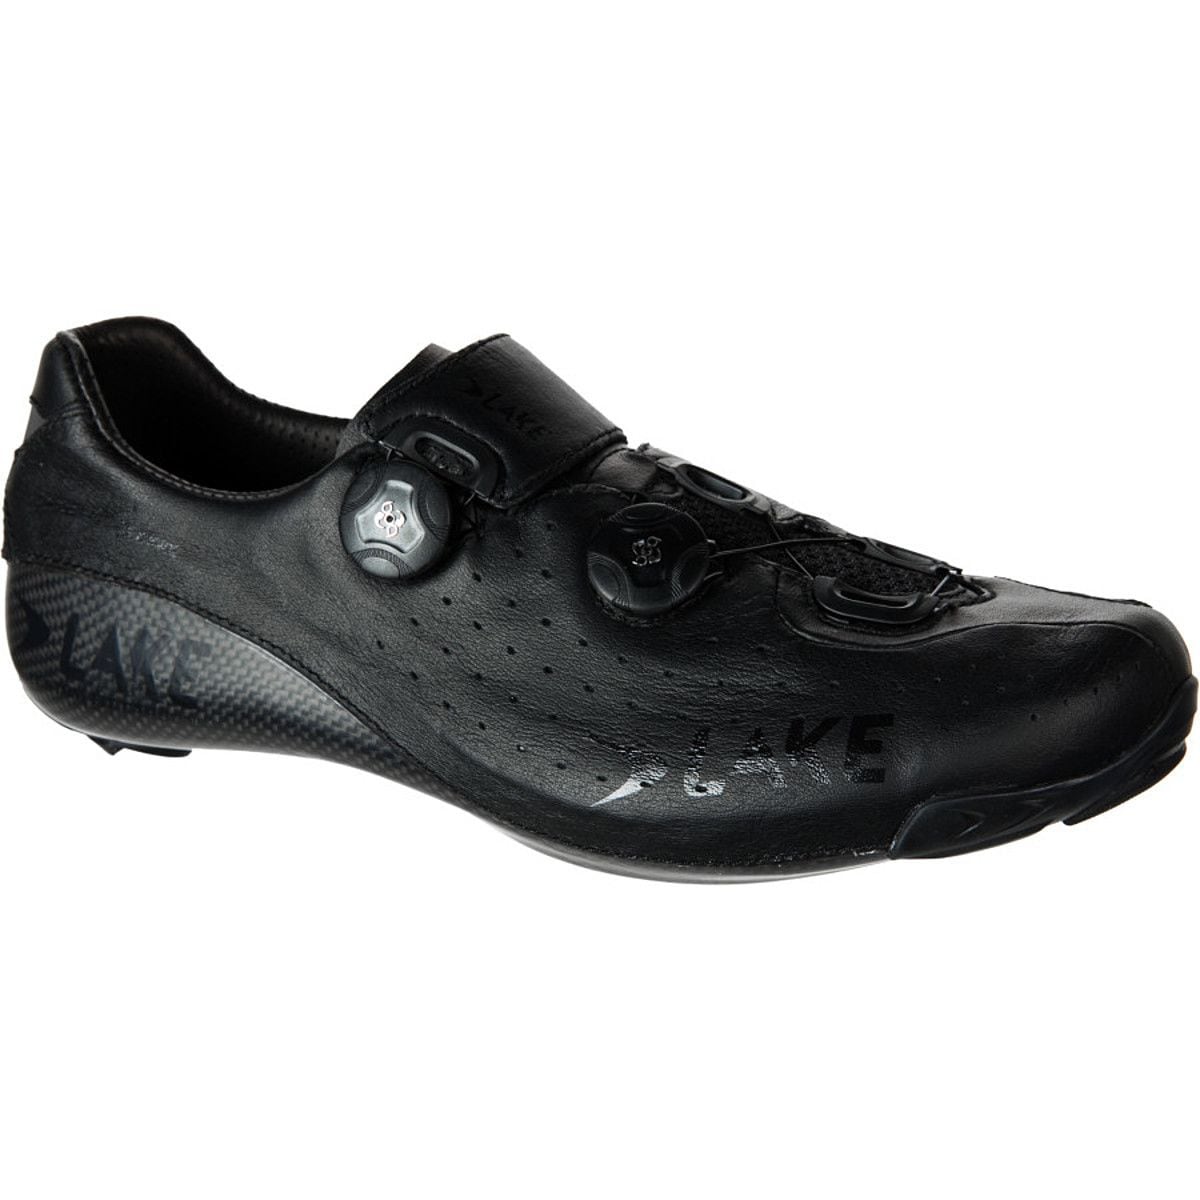 Lake CX402 Wide Cycling Shoe - Men's